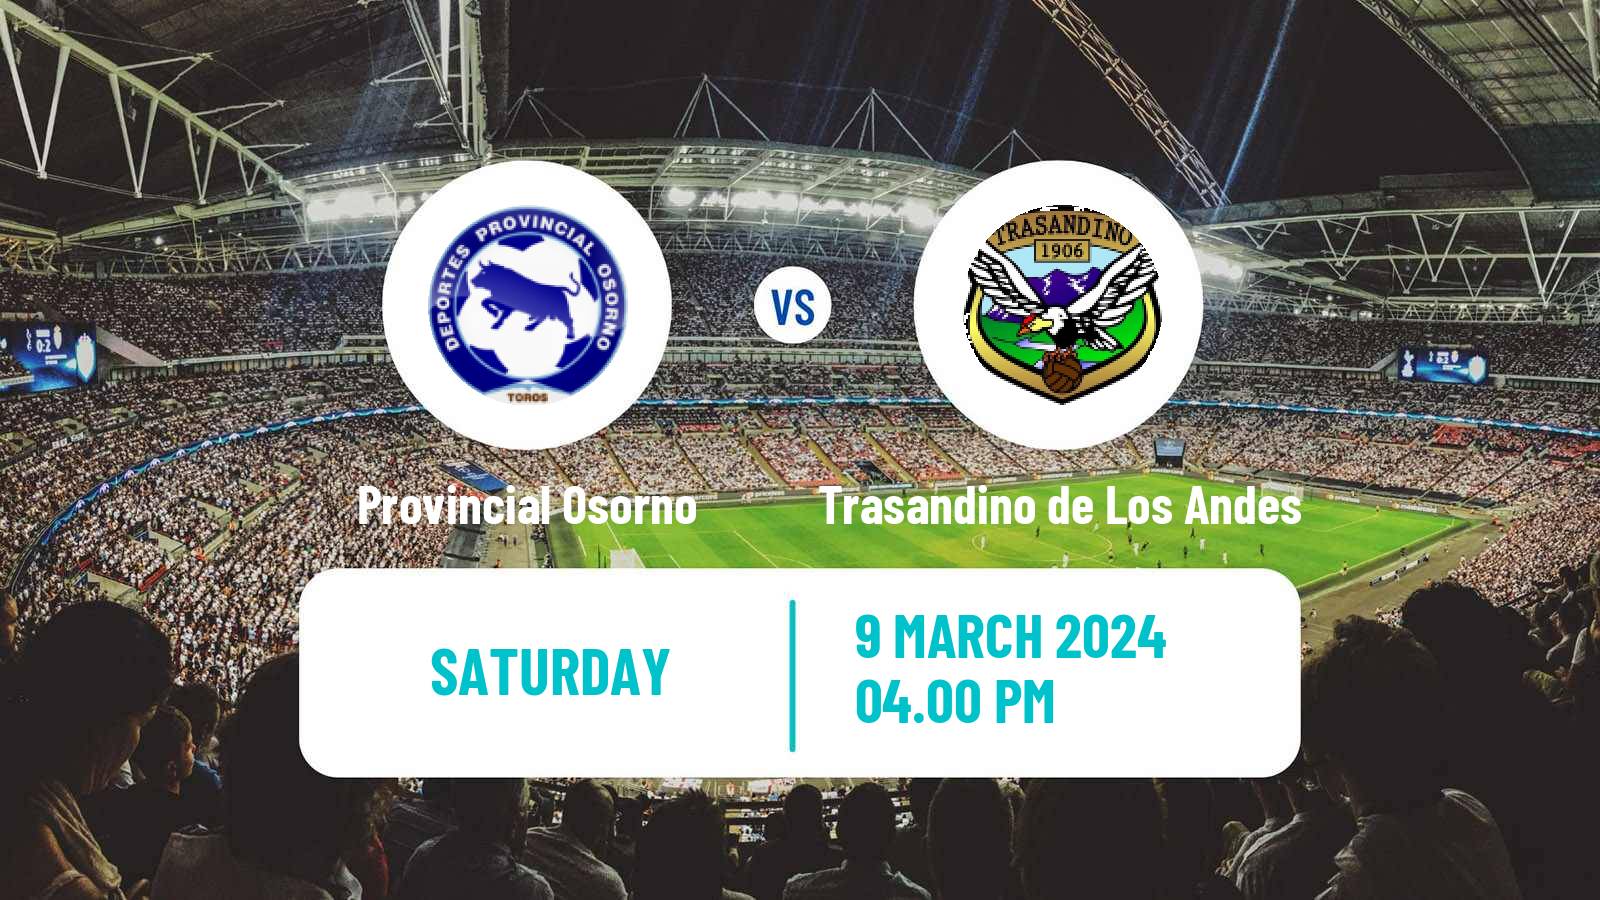 Soccer Chilean Segunda Division Provincial Osorno - Trasandino de Los Andes